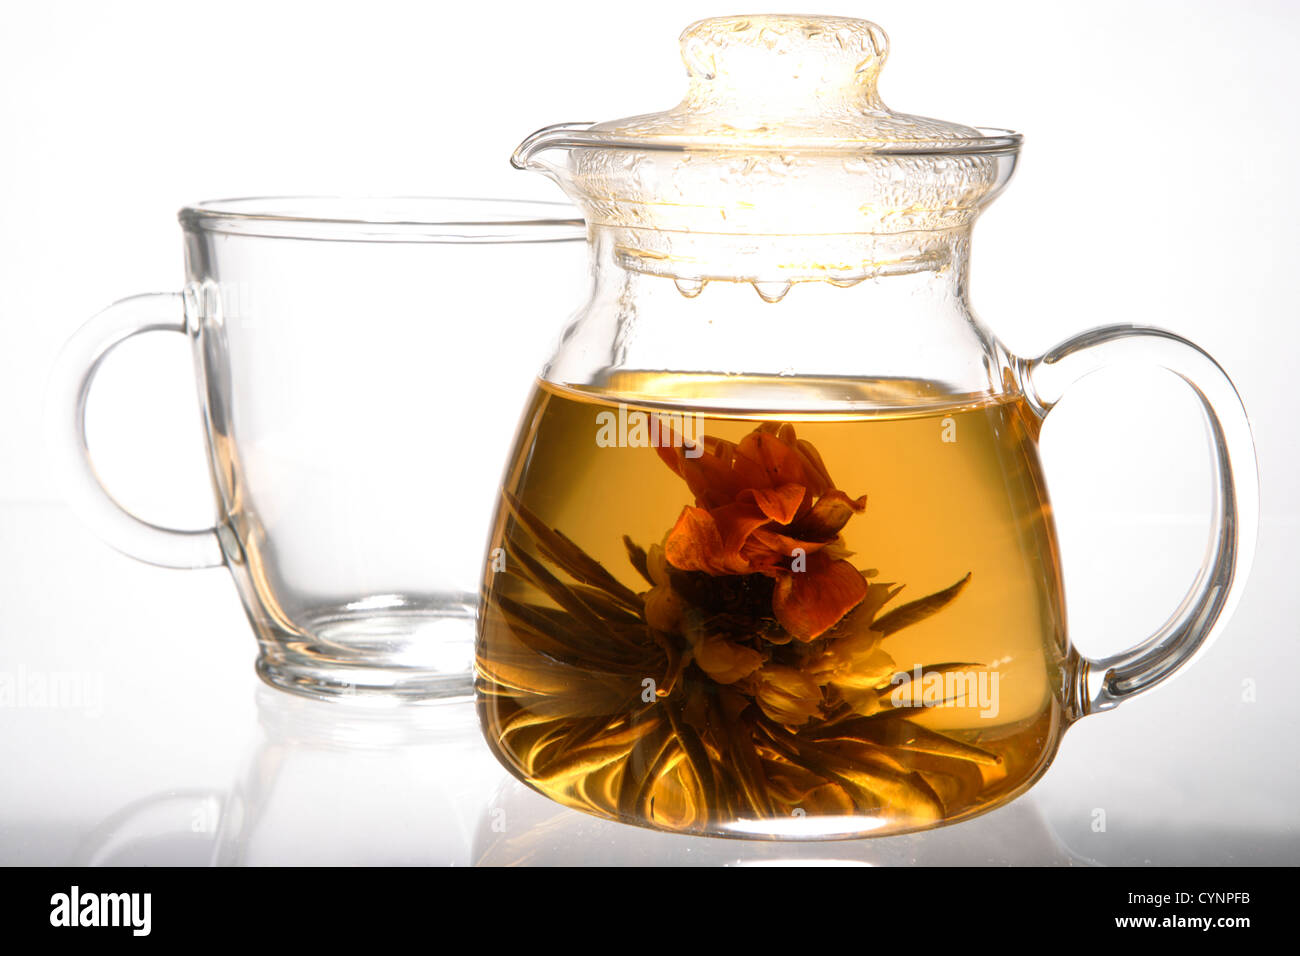 Blooming tea 'magic cherry', fiore secco si dispiega in acqua calda Foto Stock